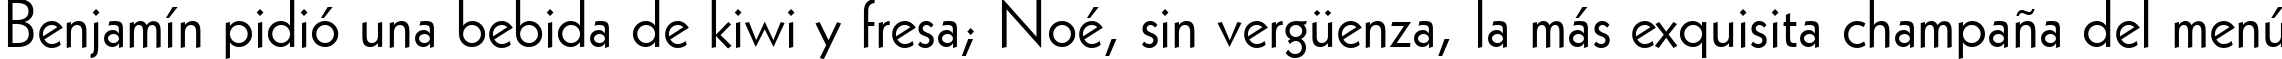 Пример написания шрифтом Geometric 231 BT текста на испанском